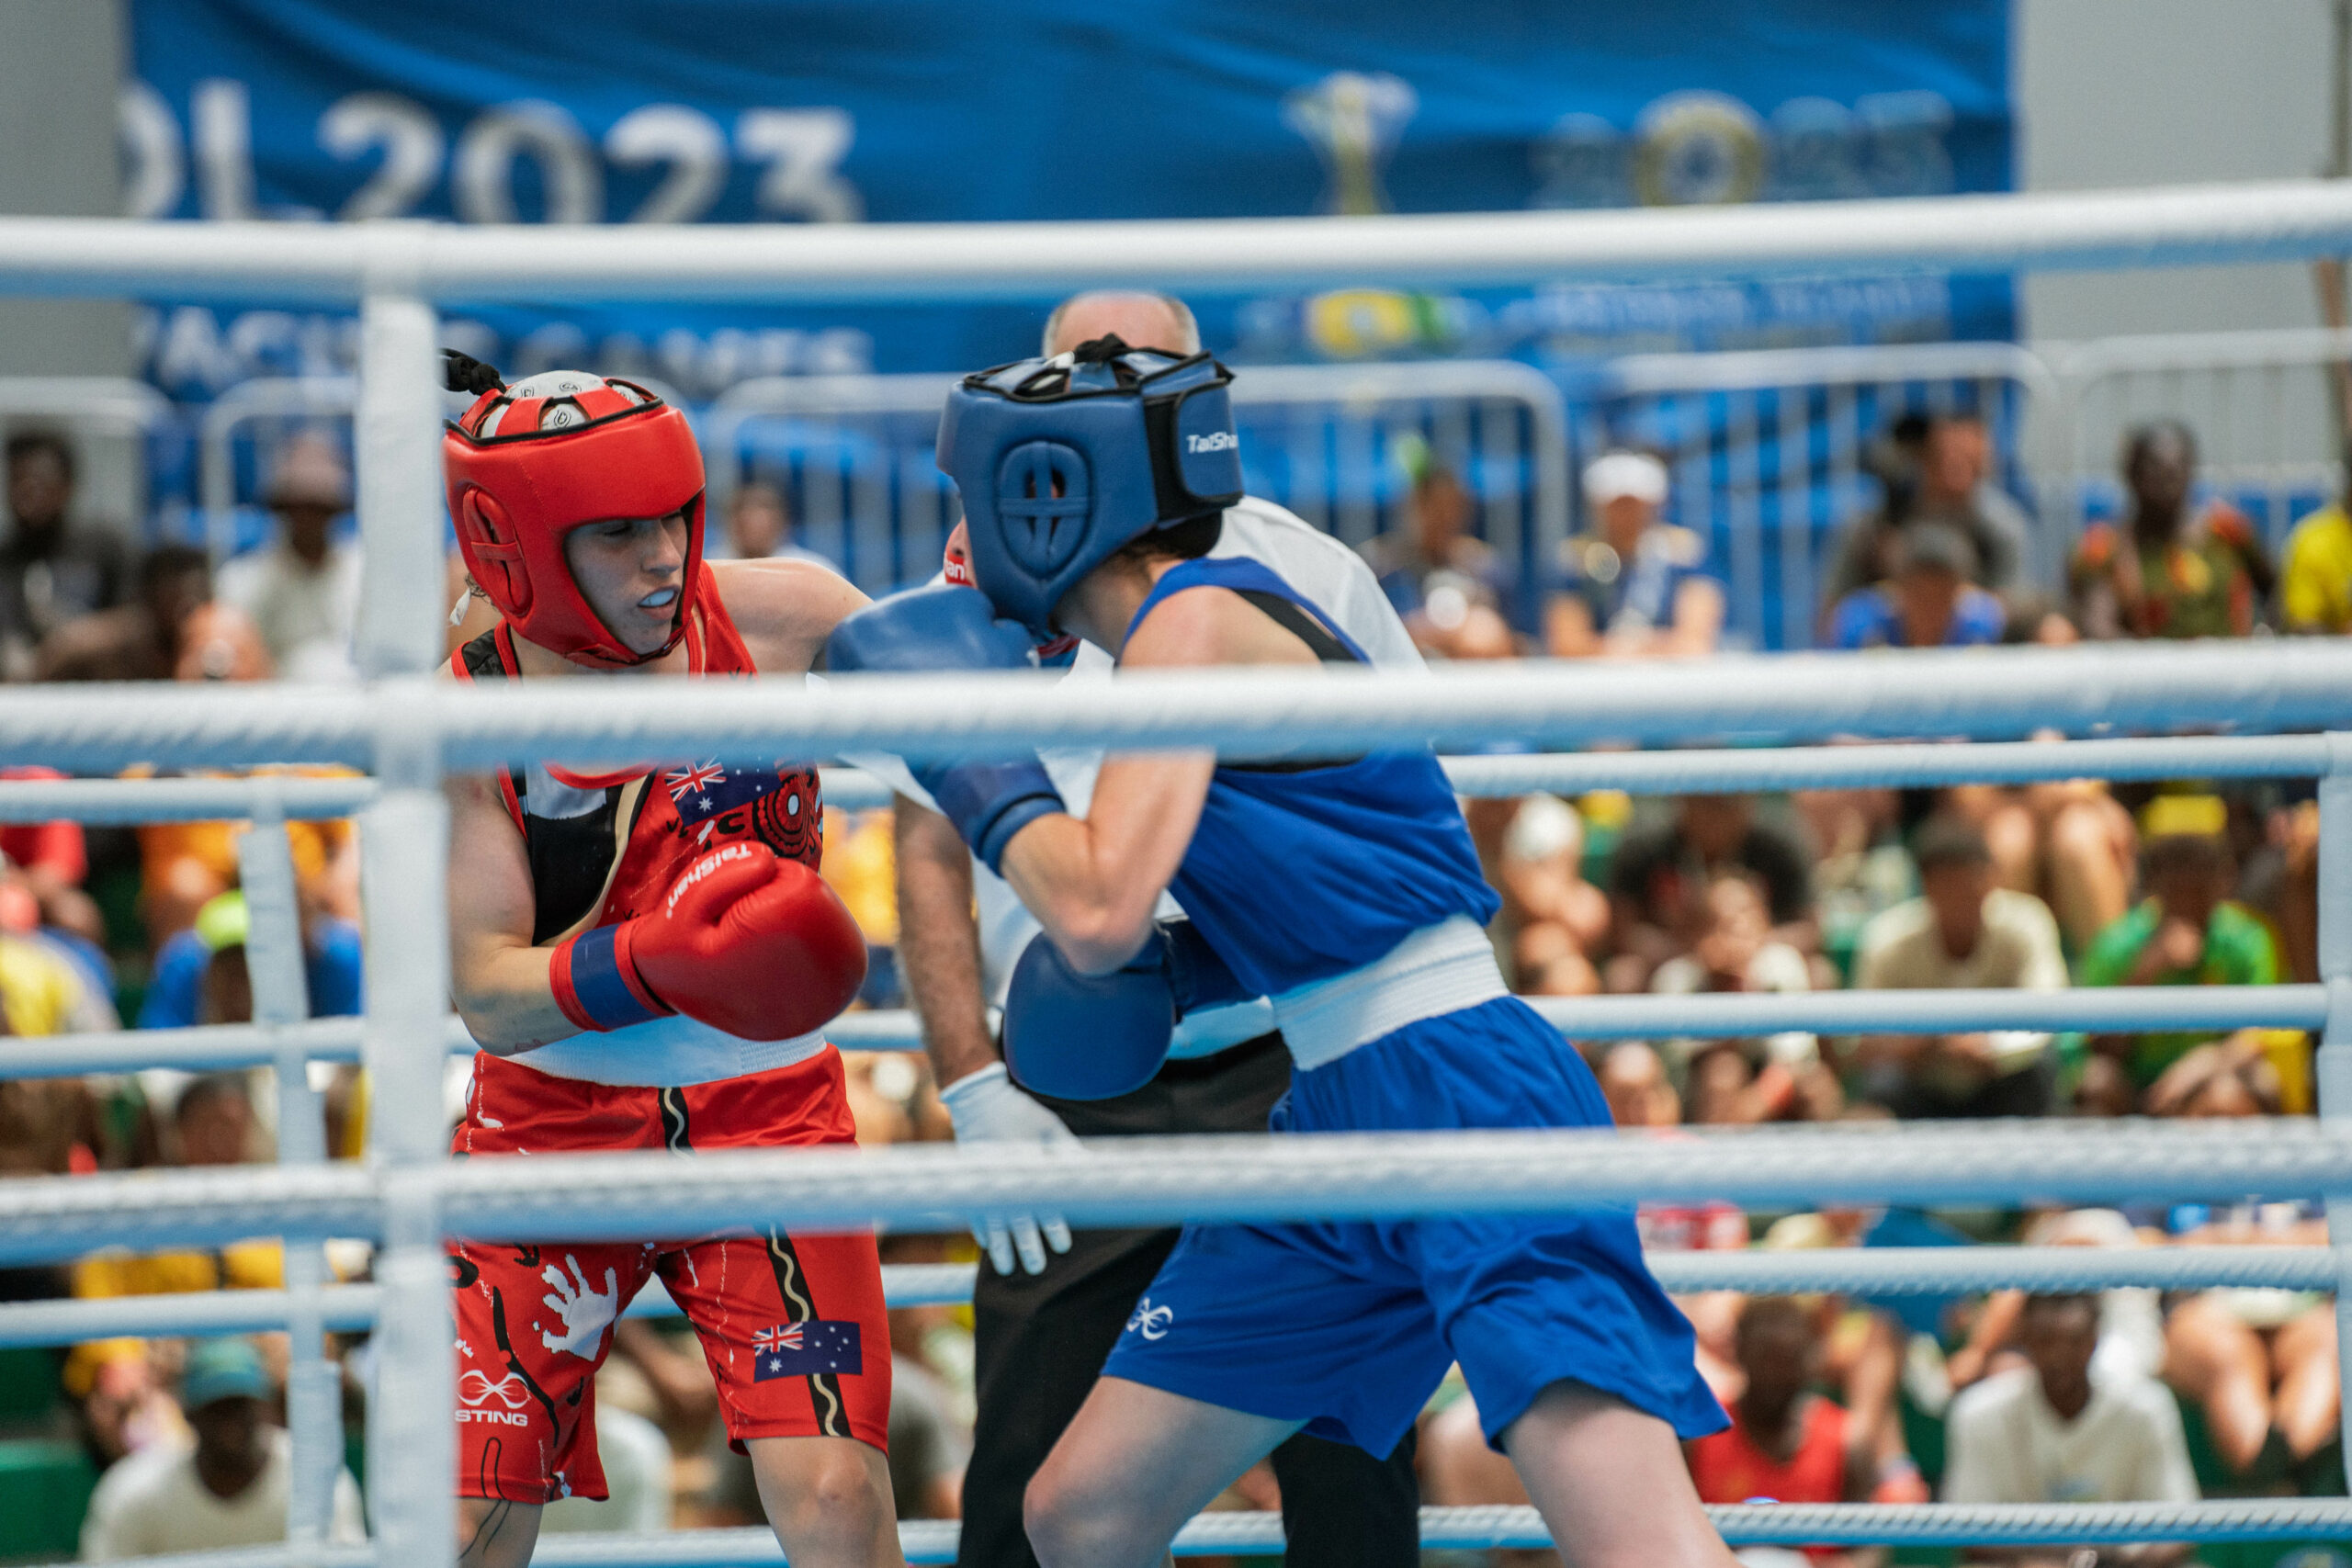 Women boxing